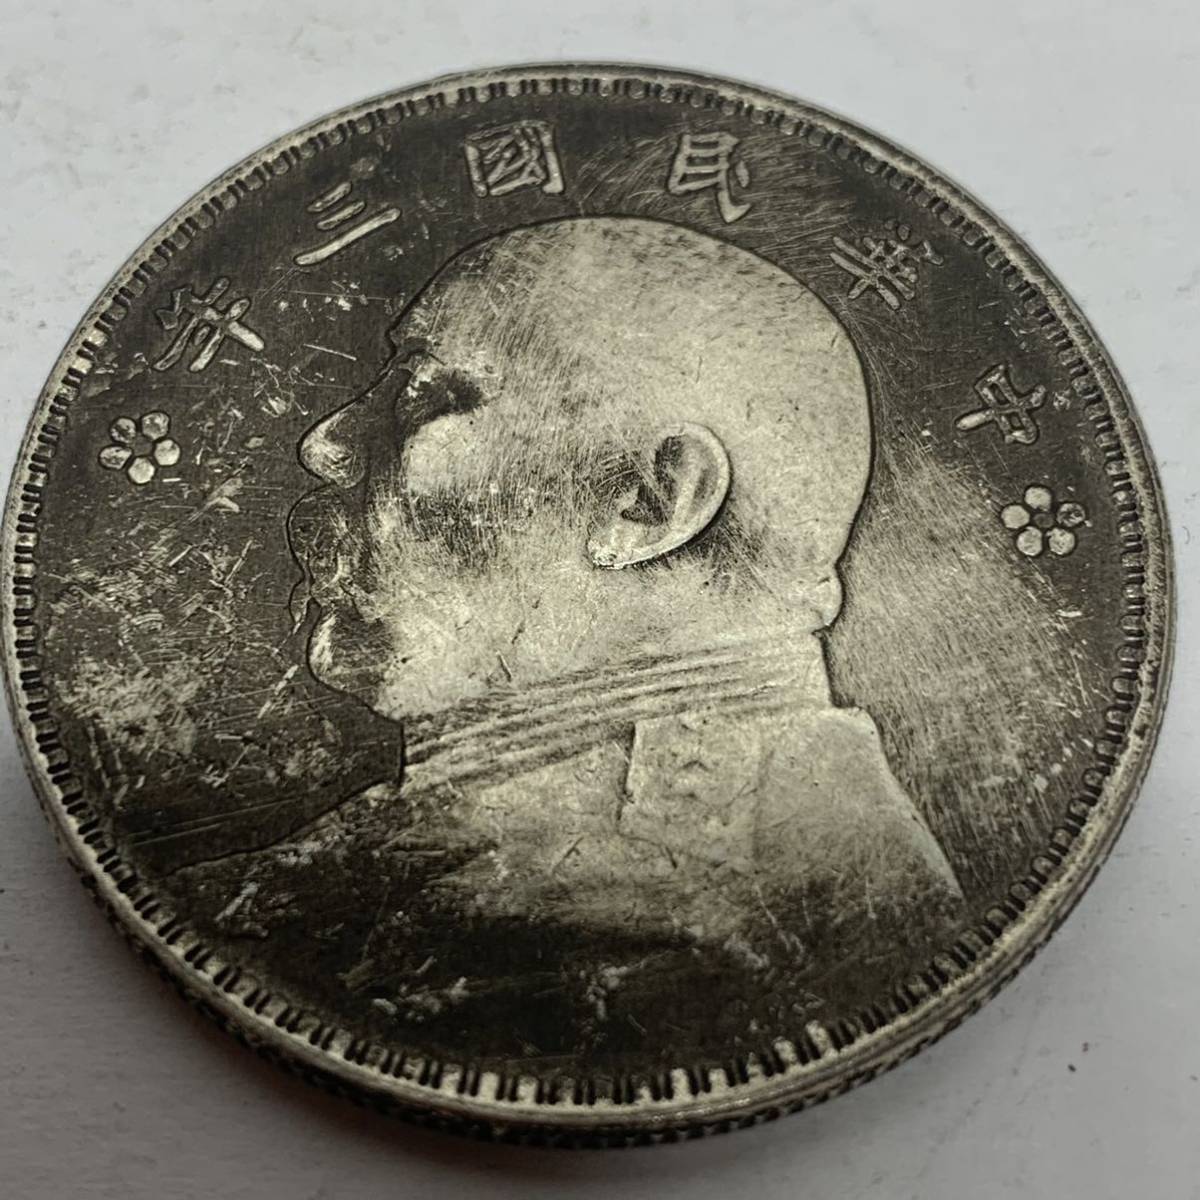 9-411 壹圓 中華民国 三年造 記念硬貨 海外コイン 古銭 コレクション 直径39mm 量目21.57gの画像2